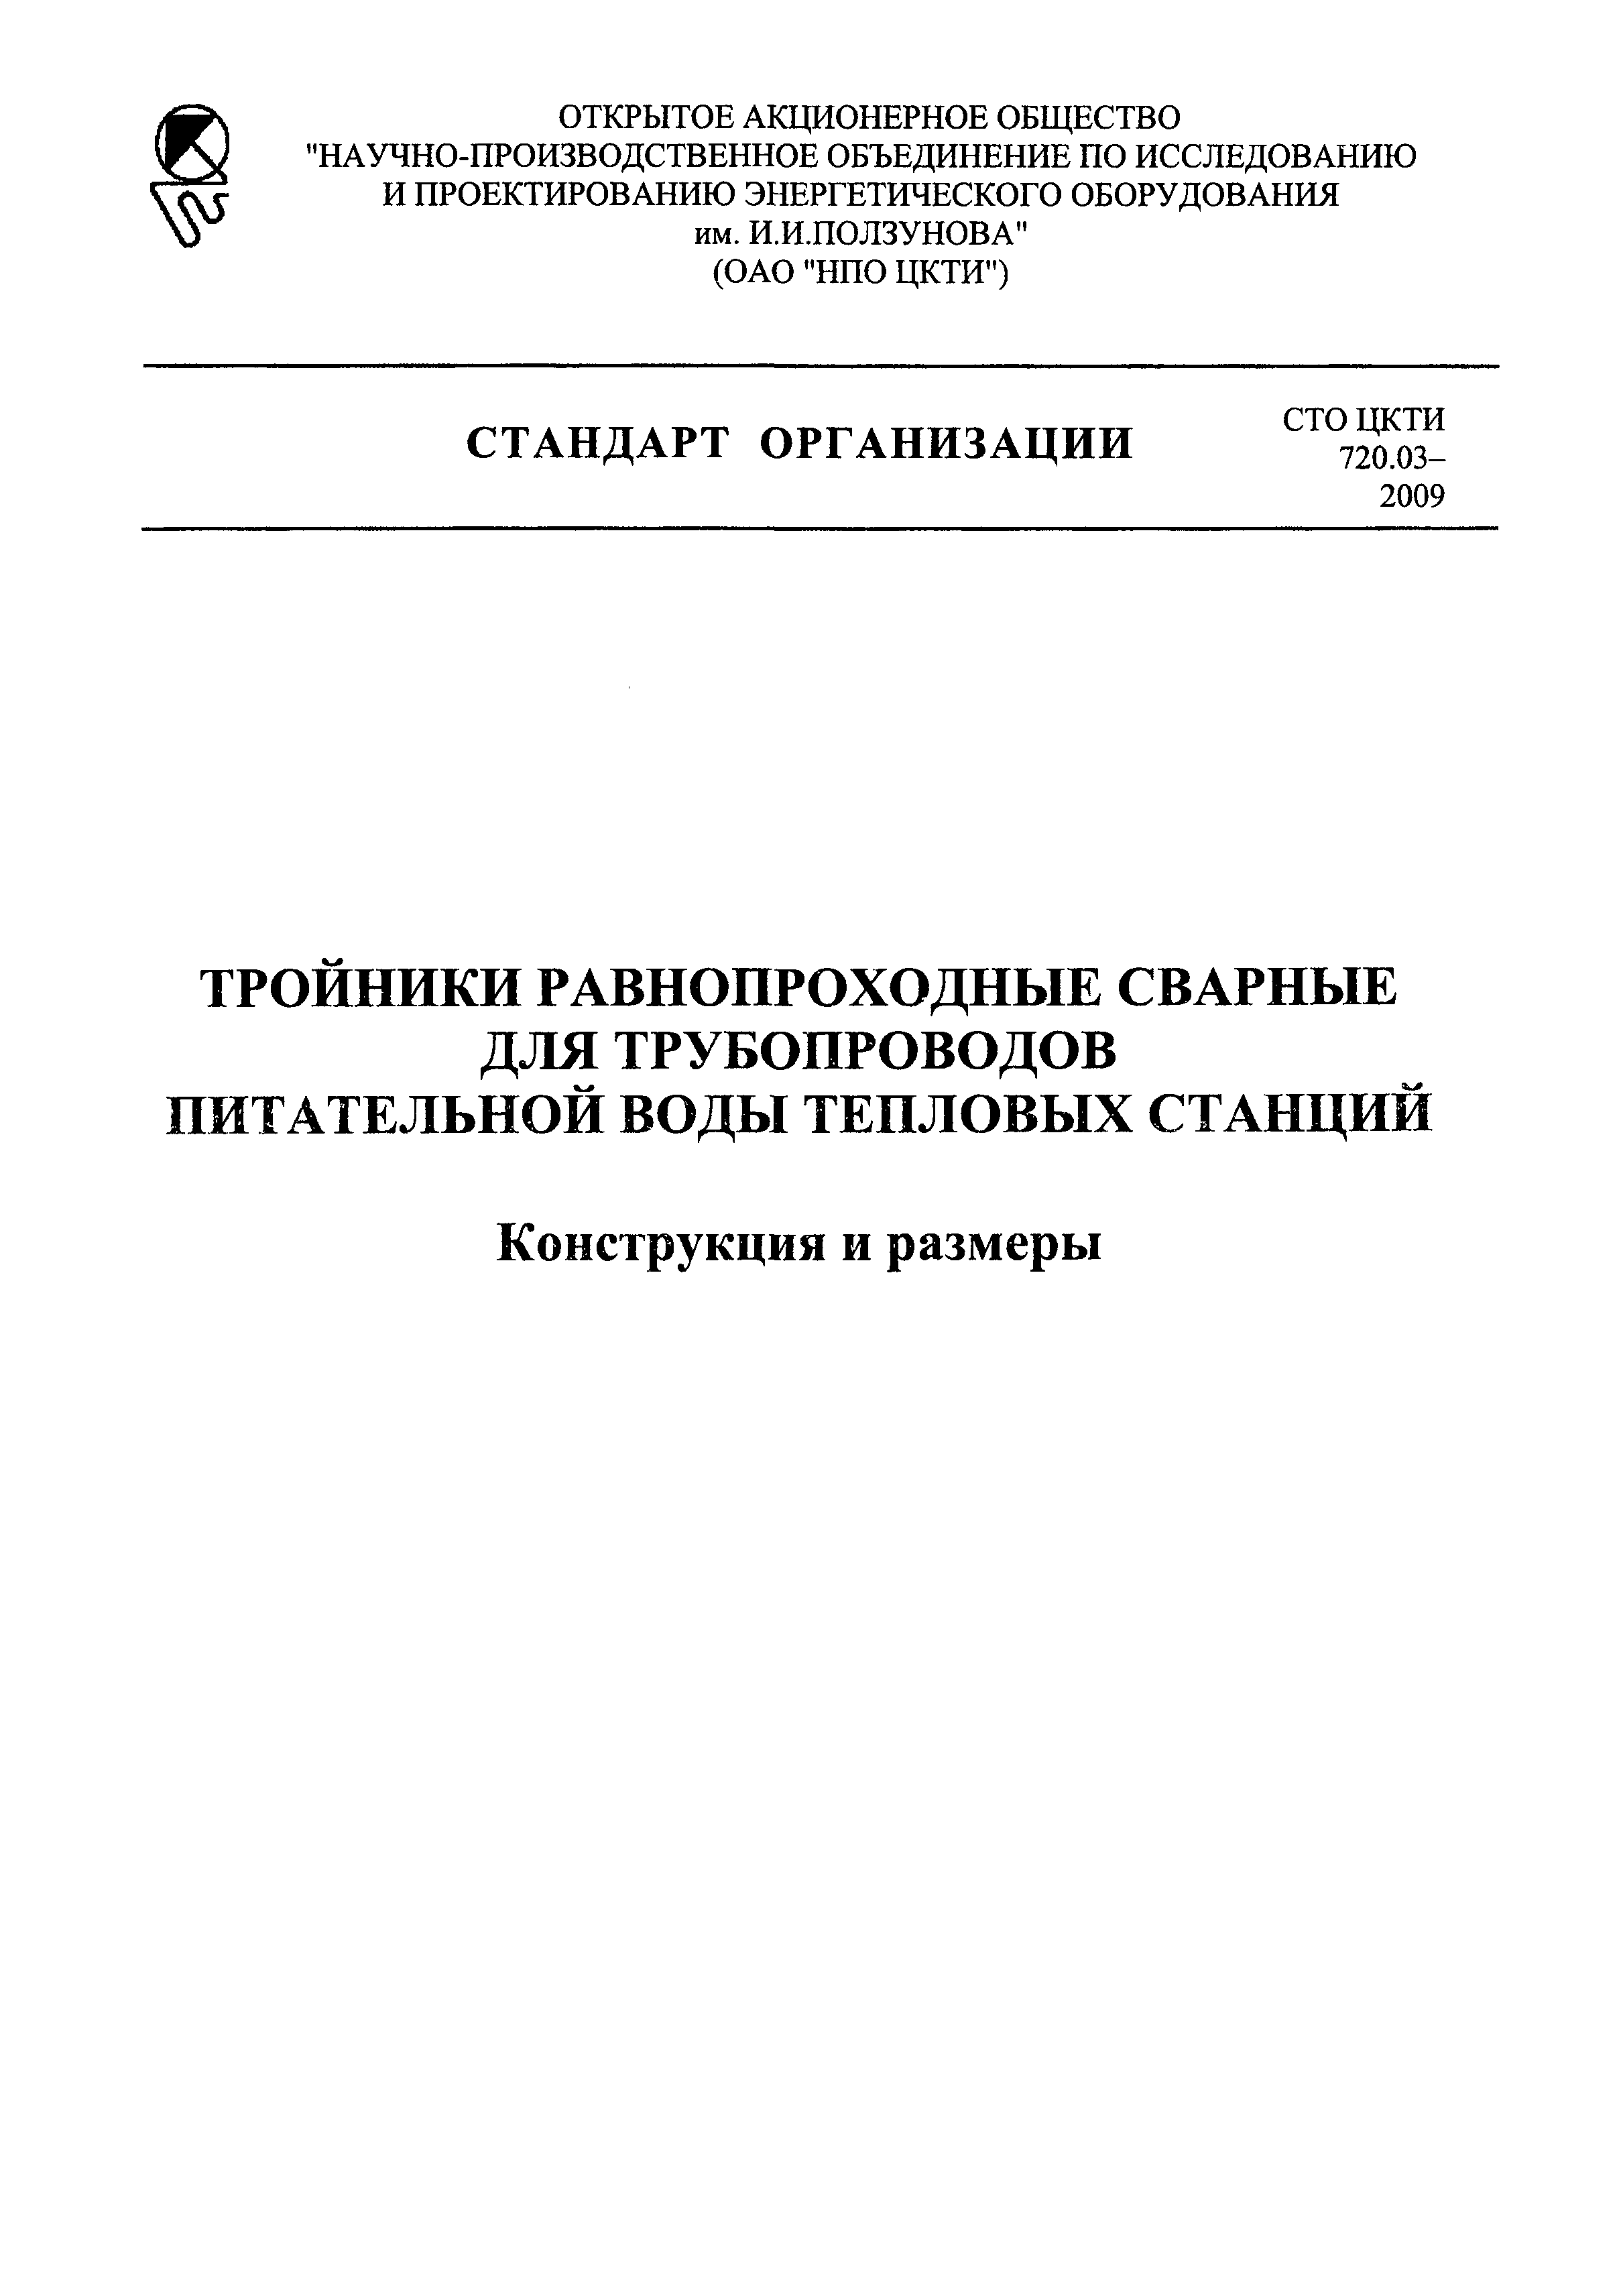 СТО ЦКТИ 720.03-2009